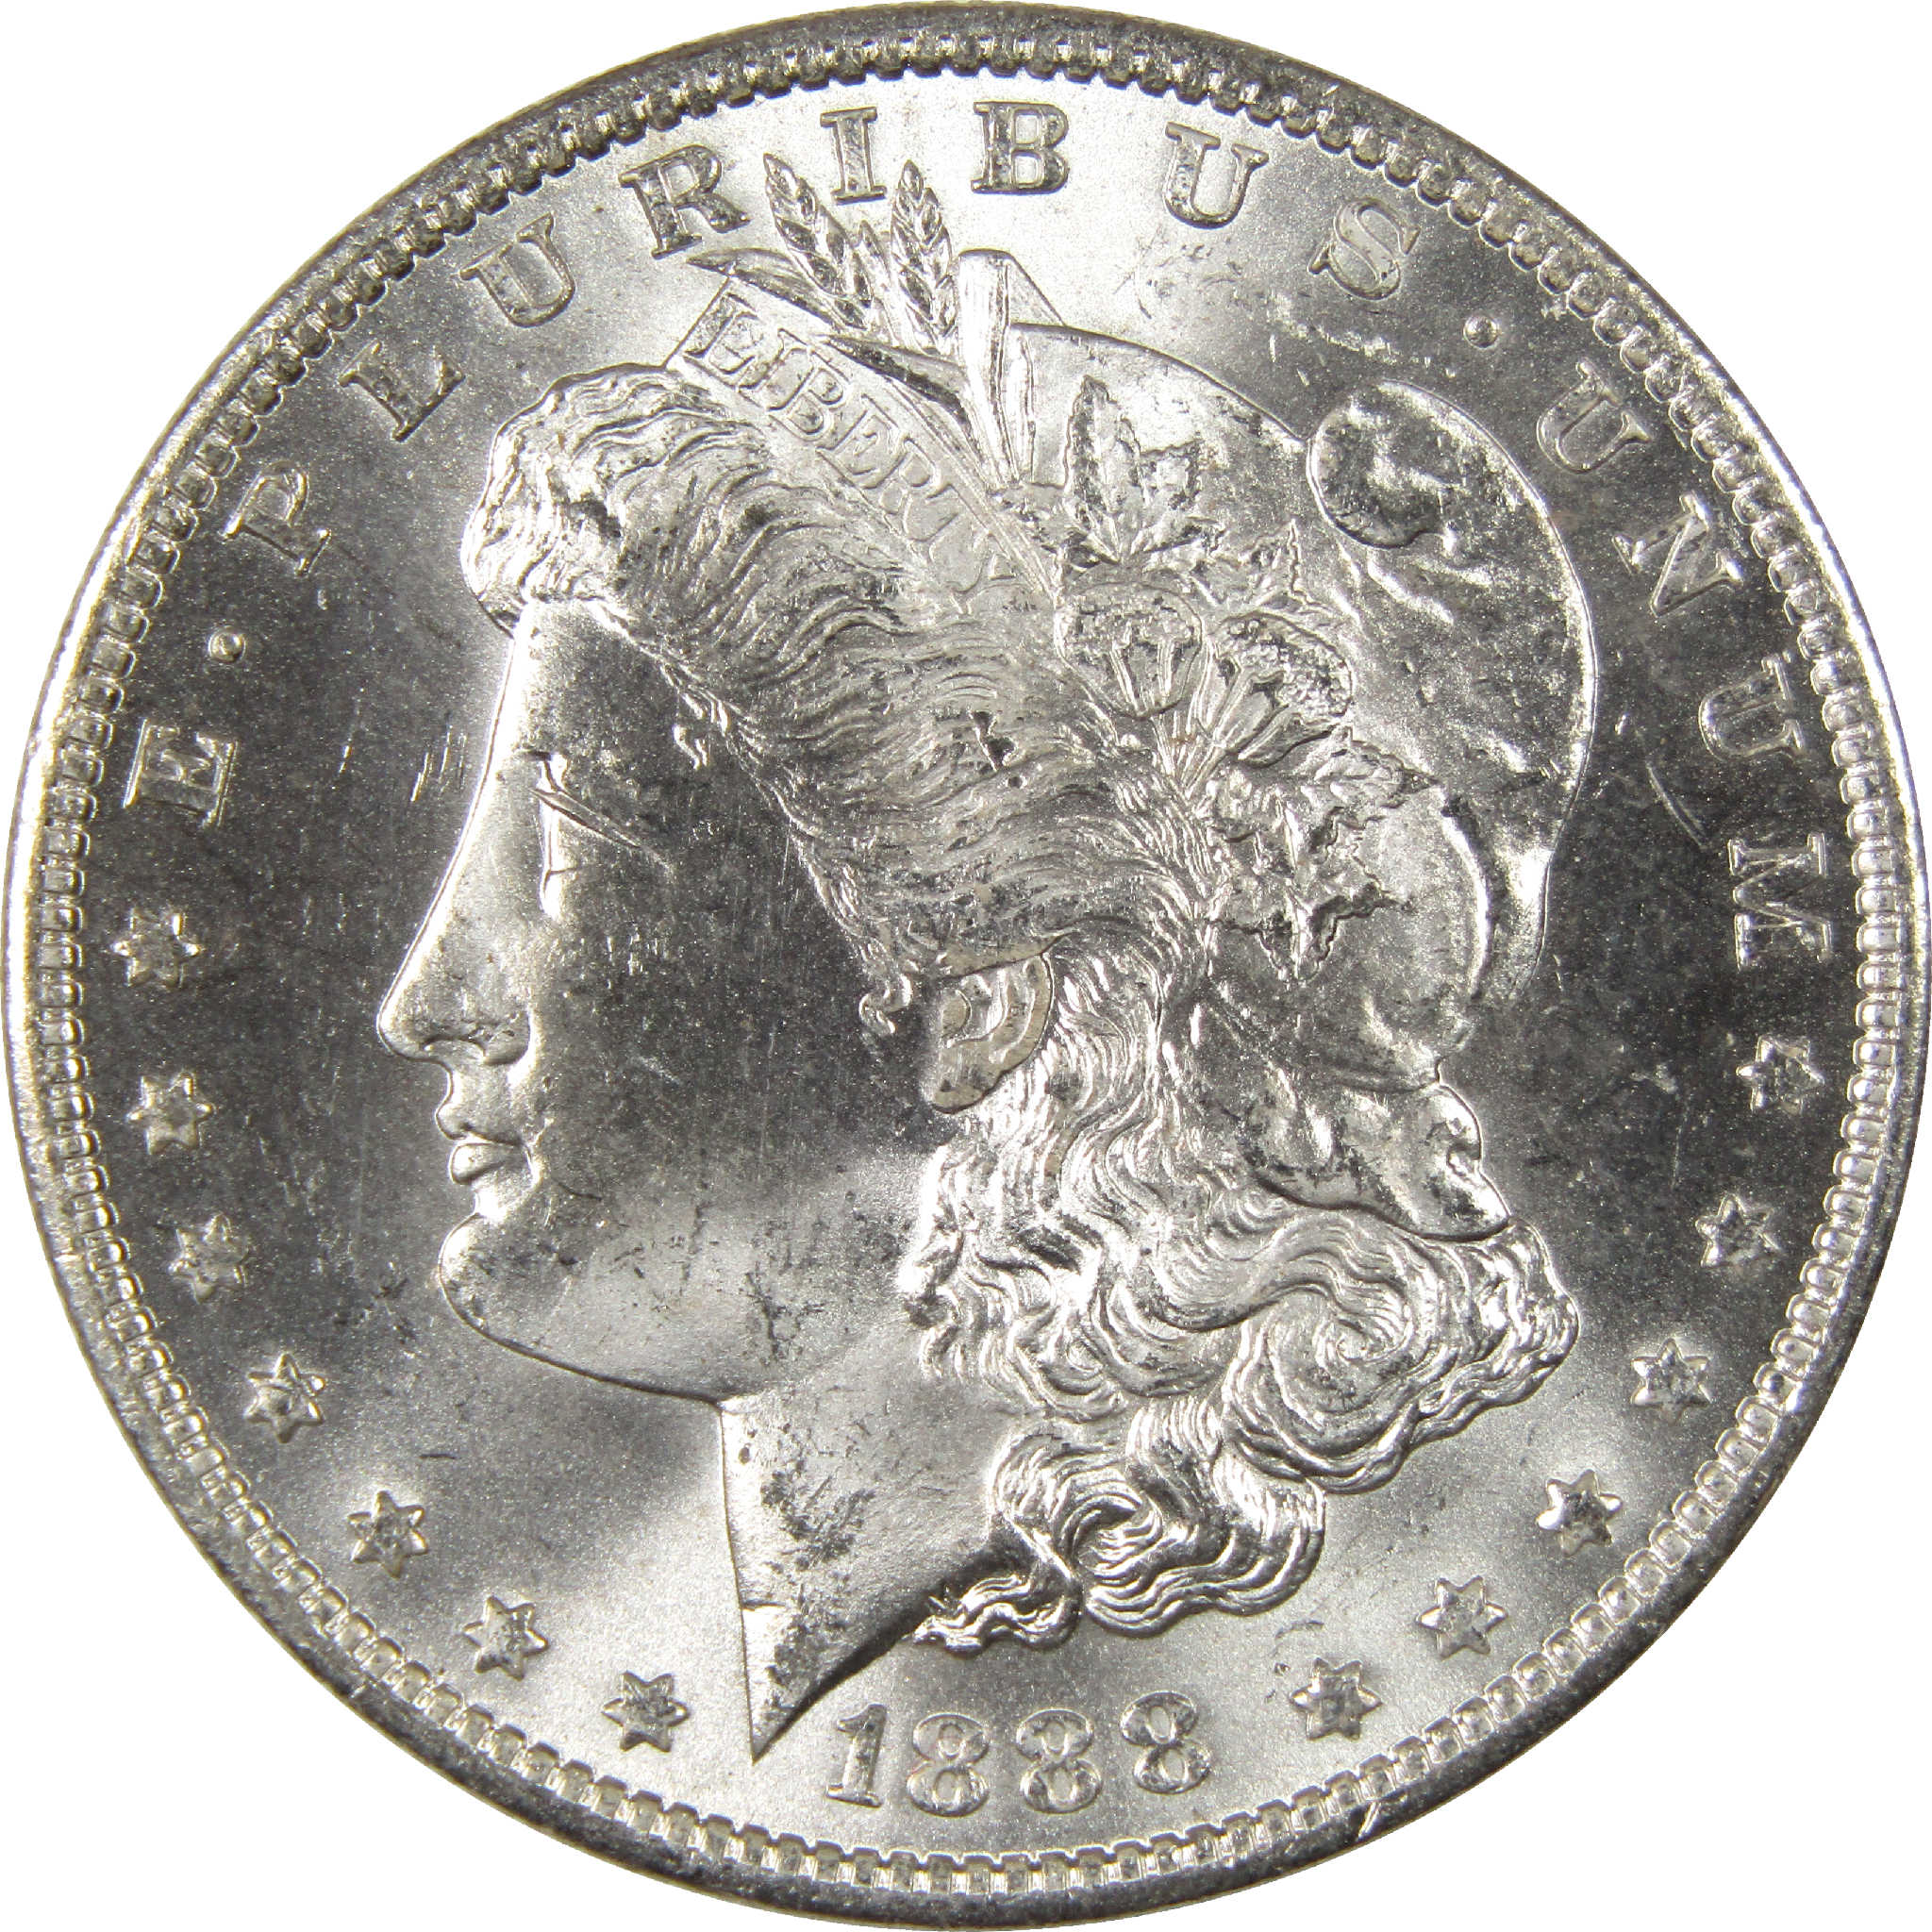 1888 O Morgan Dollar BU Choice Uncirculated Silver $1 Coin - Morgan coin - Morgan silver dollar - Morgan silver dollar for sale - Profile Coins &amp; Collectibles